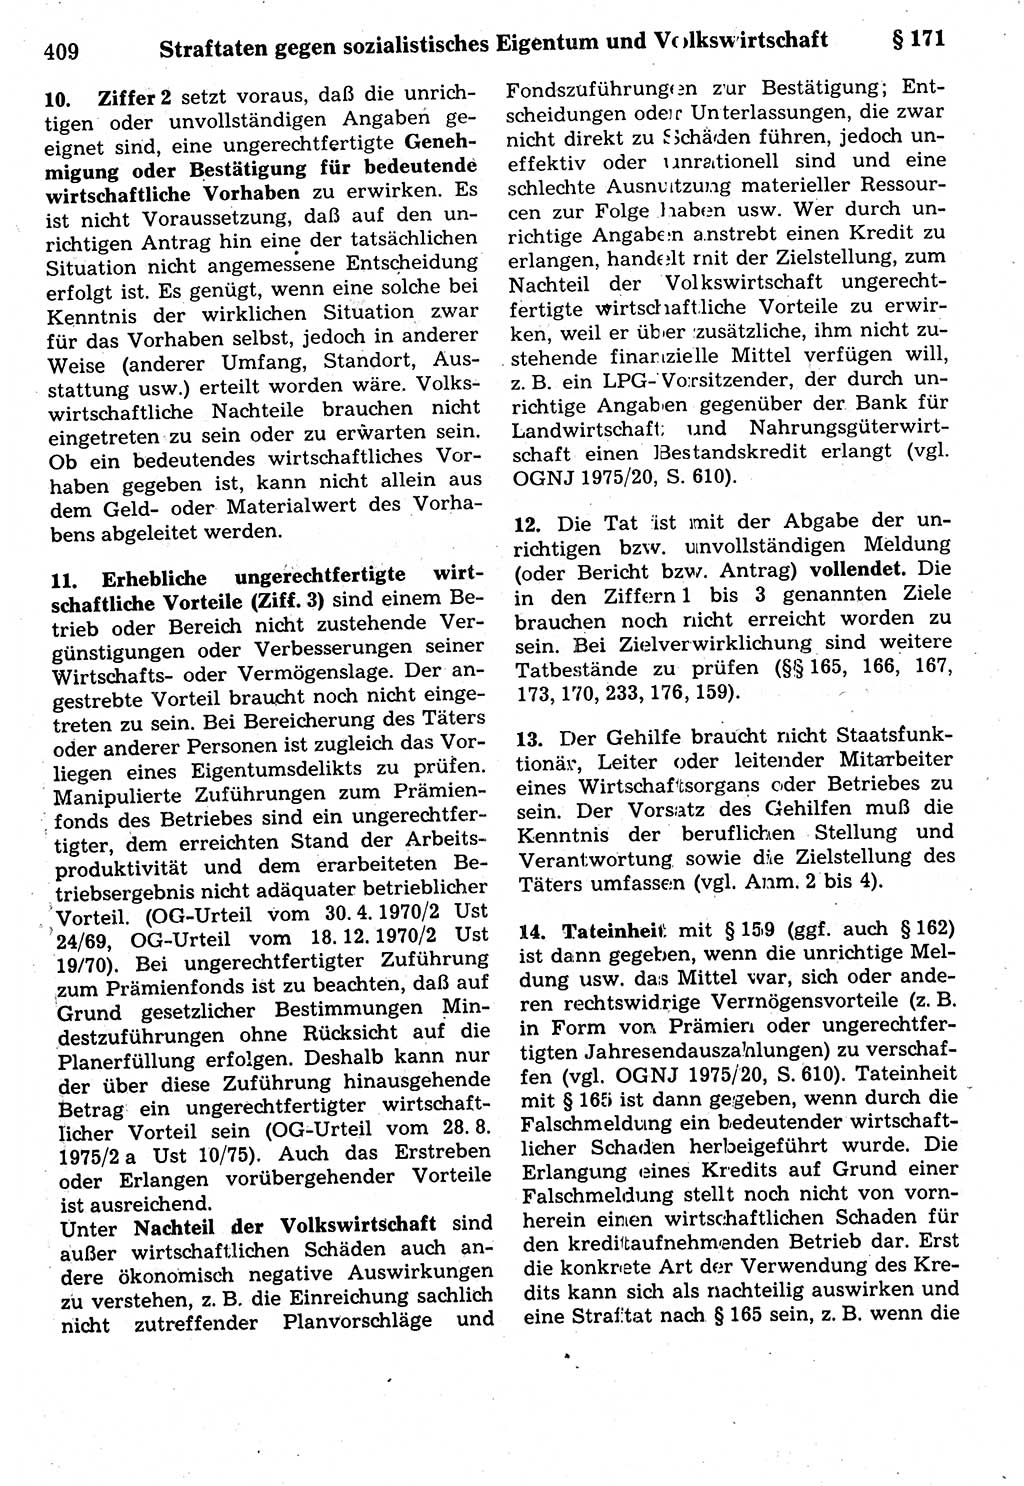 Strafrecht der Deutschen Demokratischen Republik (DDR), Kommentar zum Strafgesetzbuch (StGB) 1987, Seite 409 (Strafr. DDR Komm. StGB 1987, S. 409)